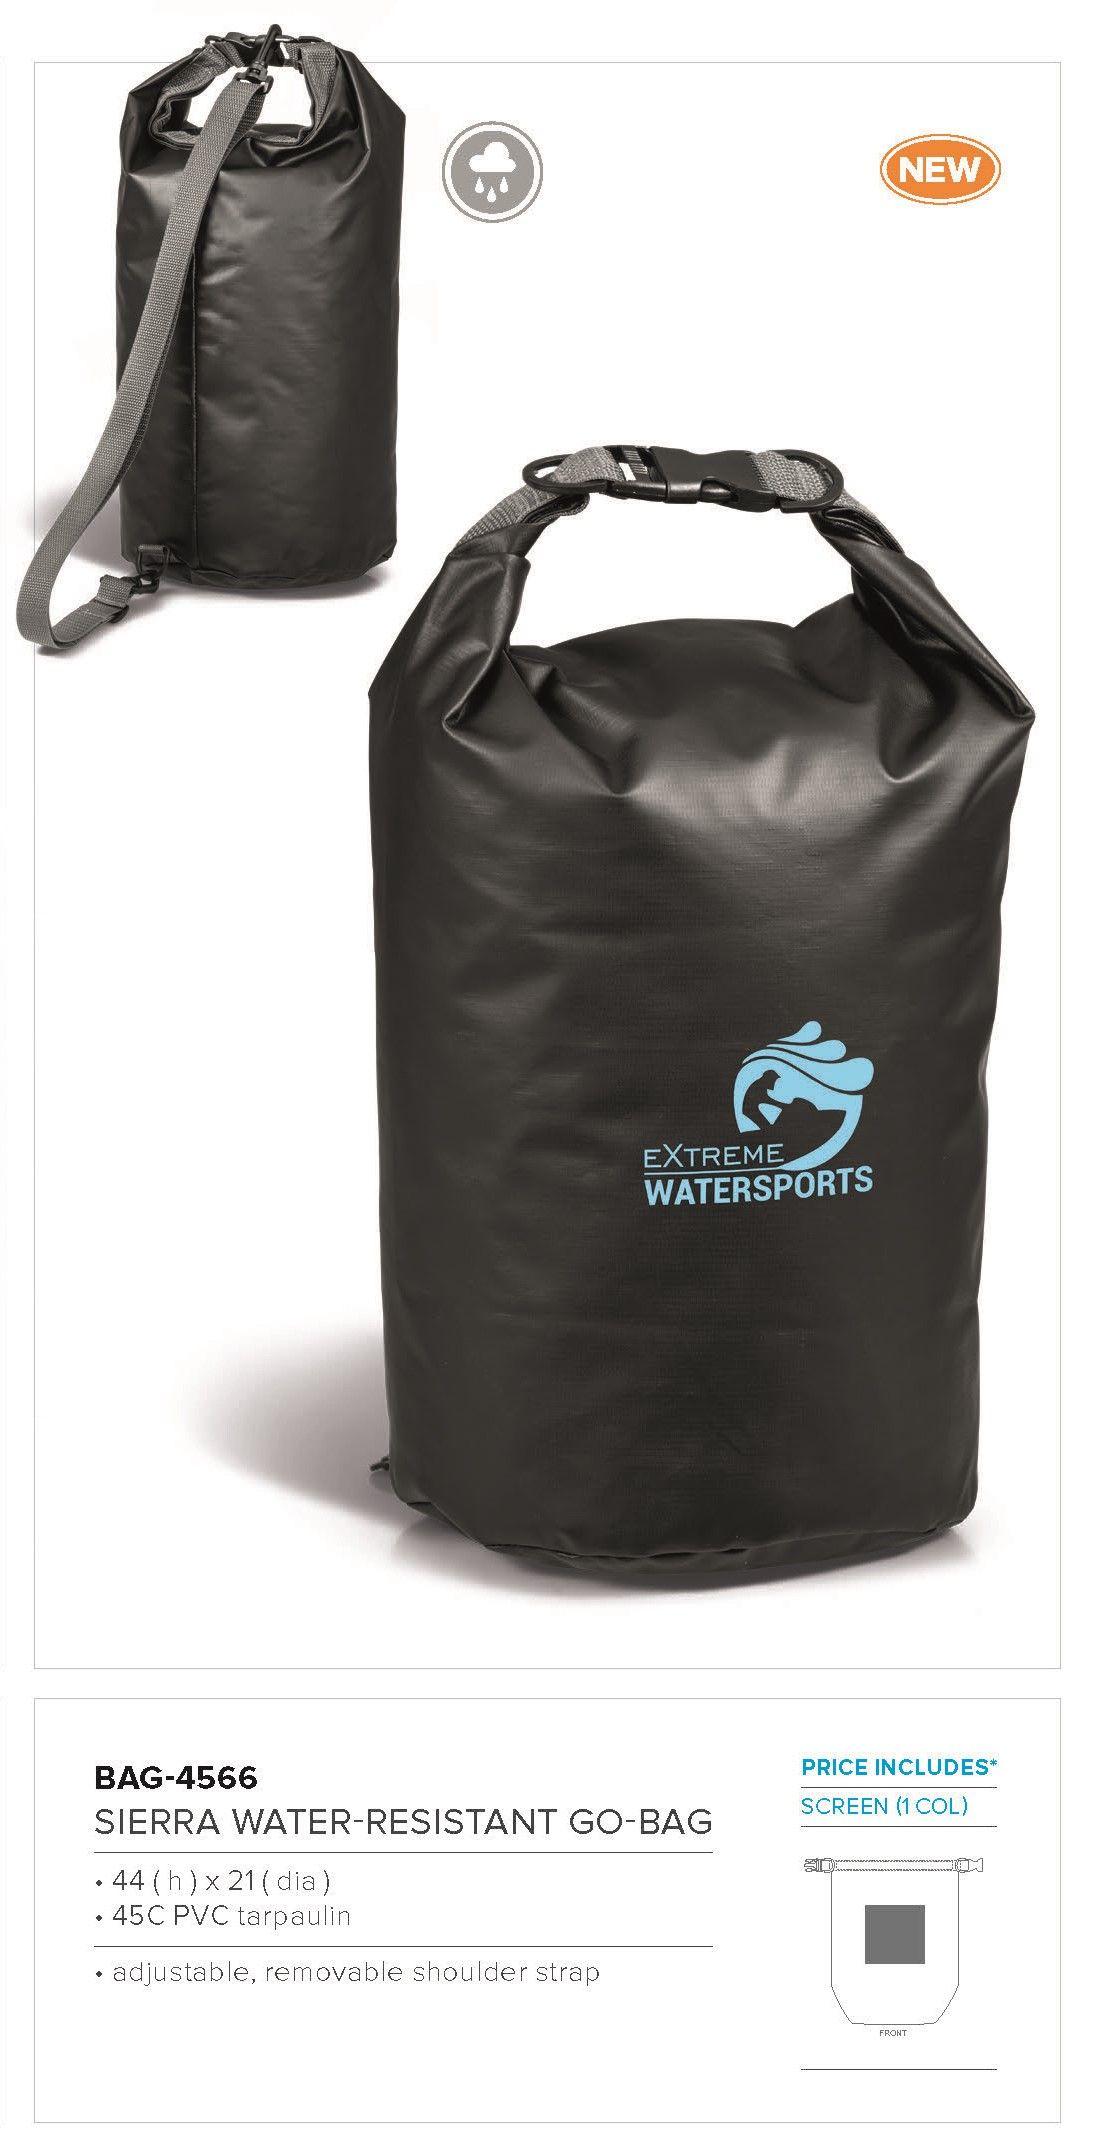 Sierra Water Logo - Branded Sierra-Water Resistant Go Bag,Embroid your own Logo!